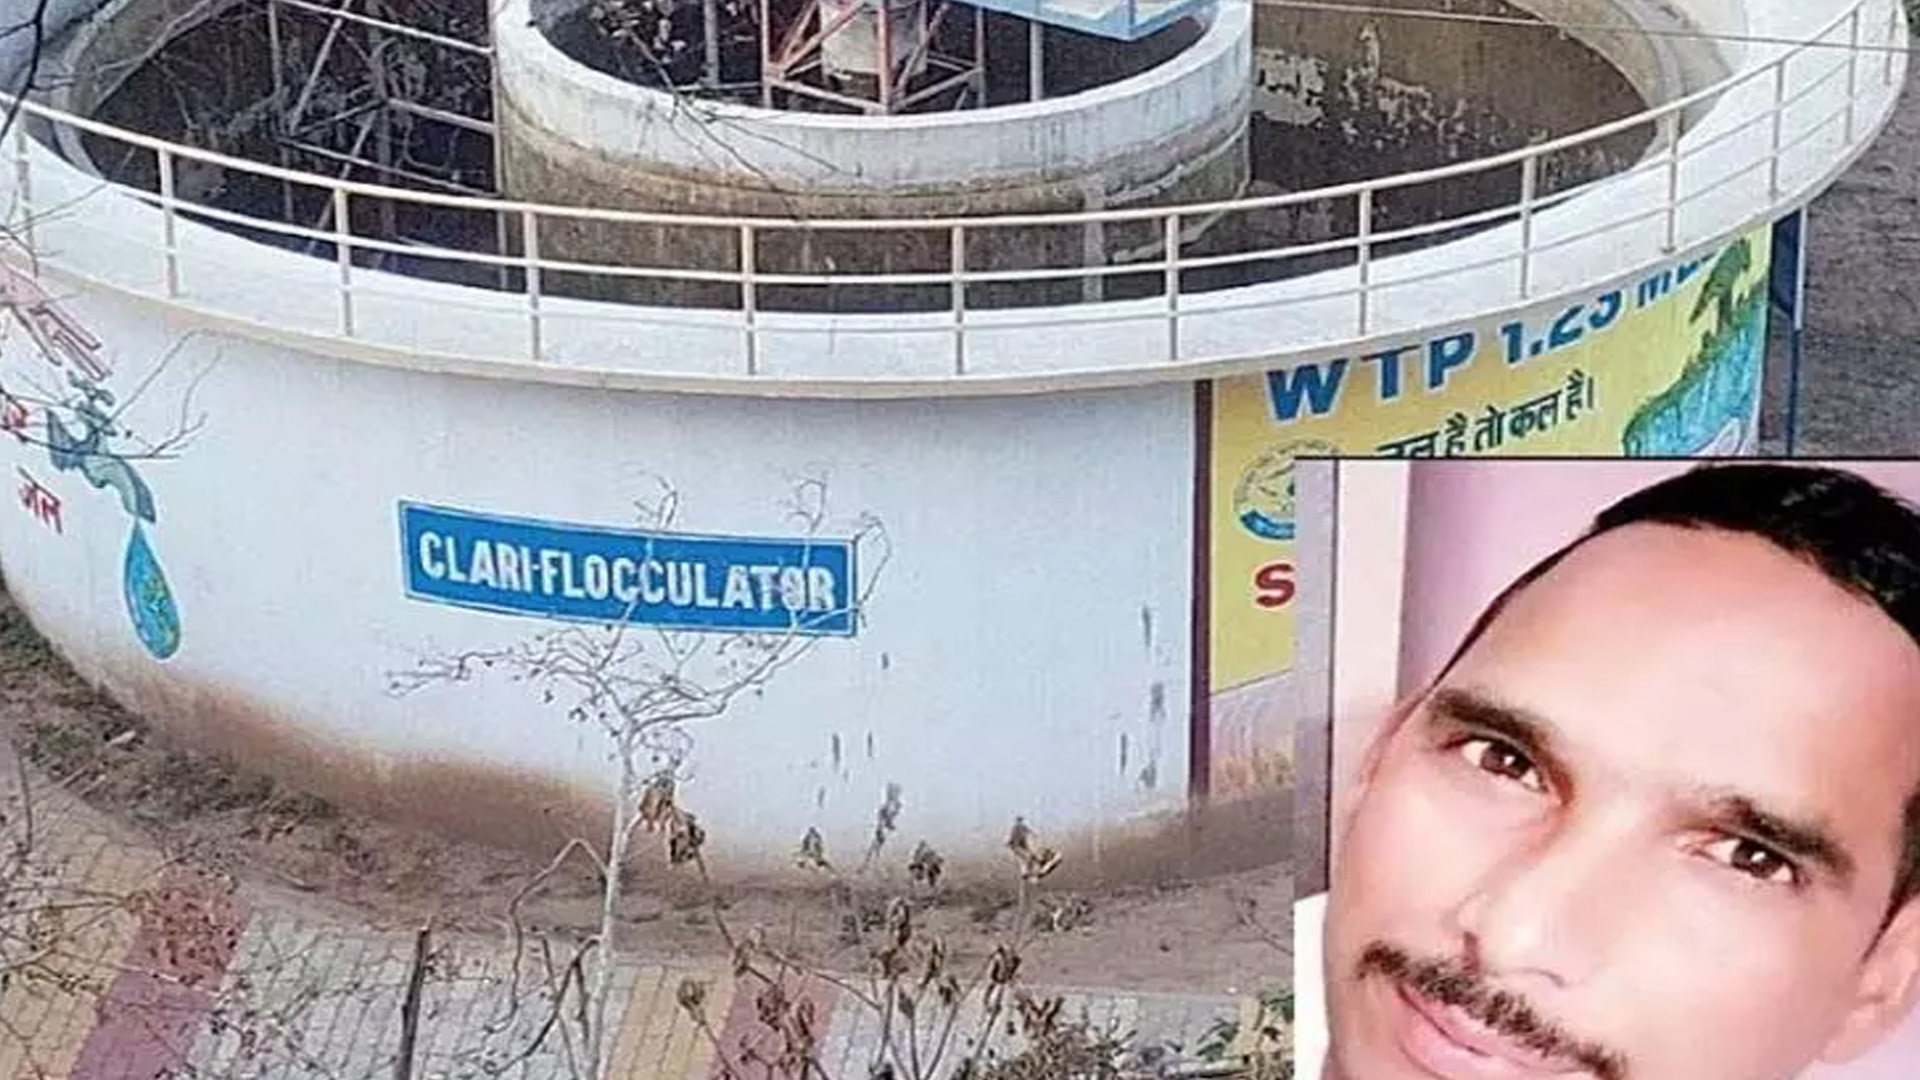 Dead body of pump operator in water tank